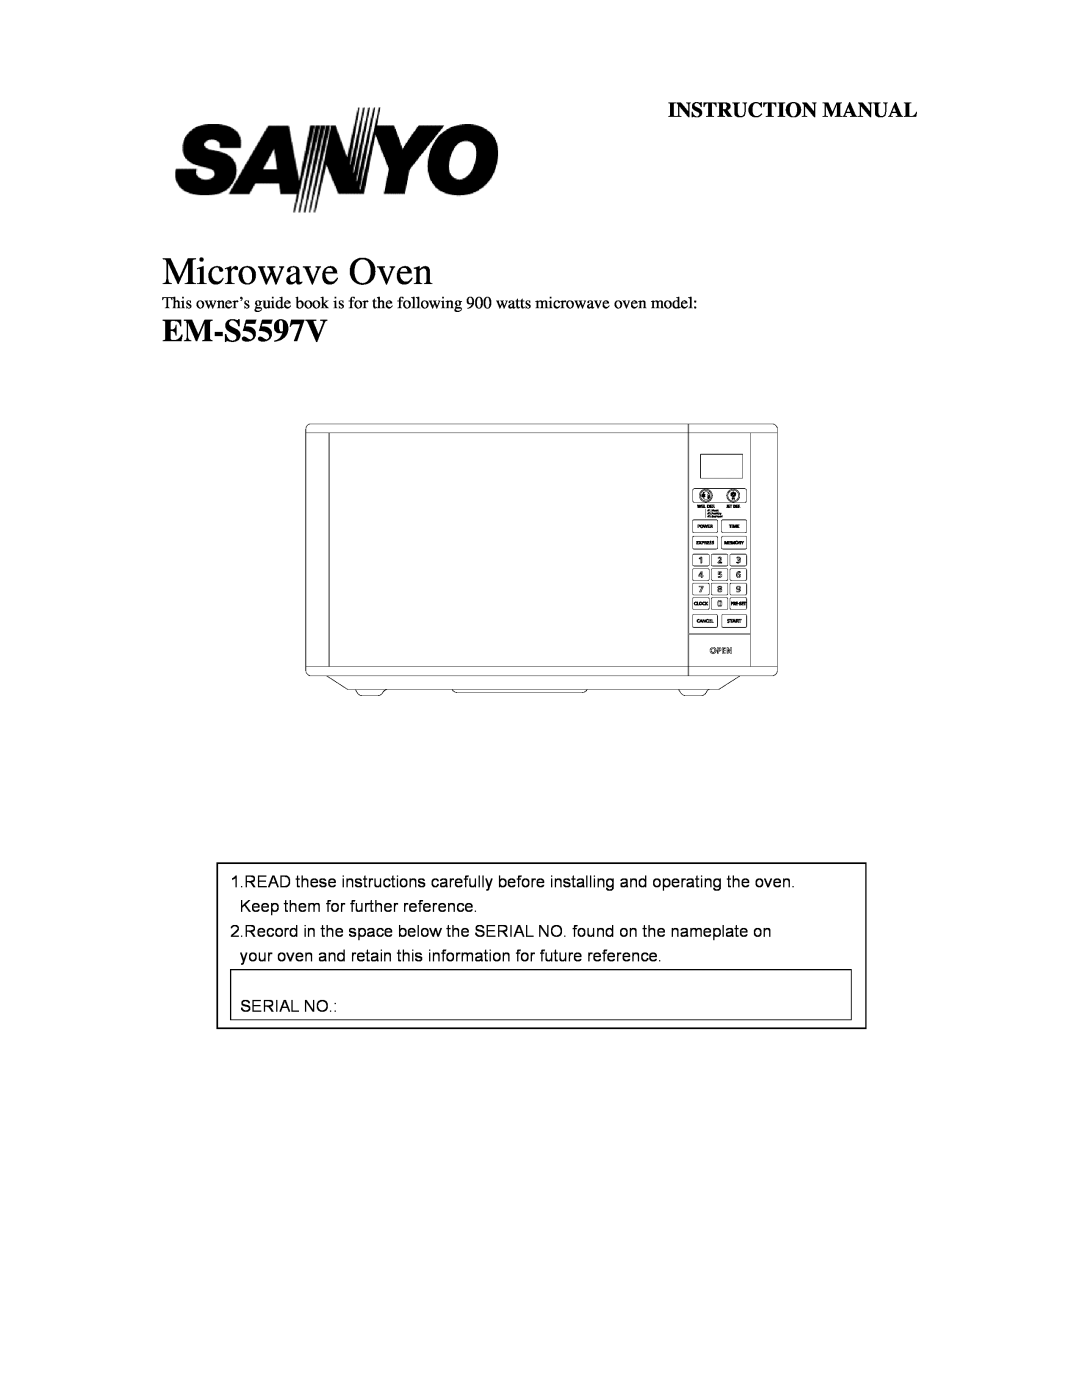 Sanyo EM-S5597B instruction manual Microwave Oven, EM-S5597V 